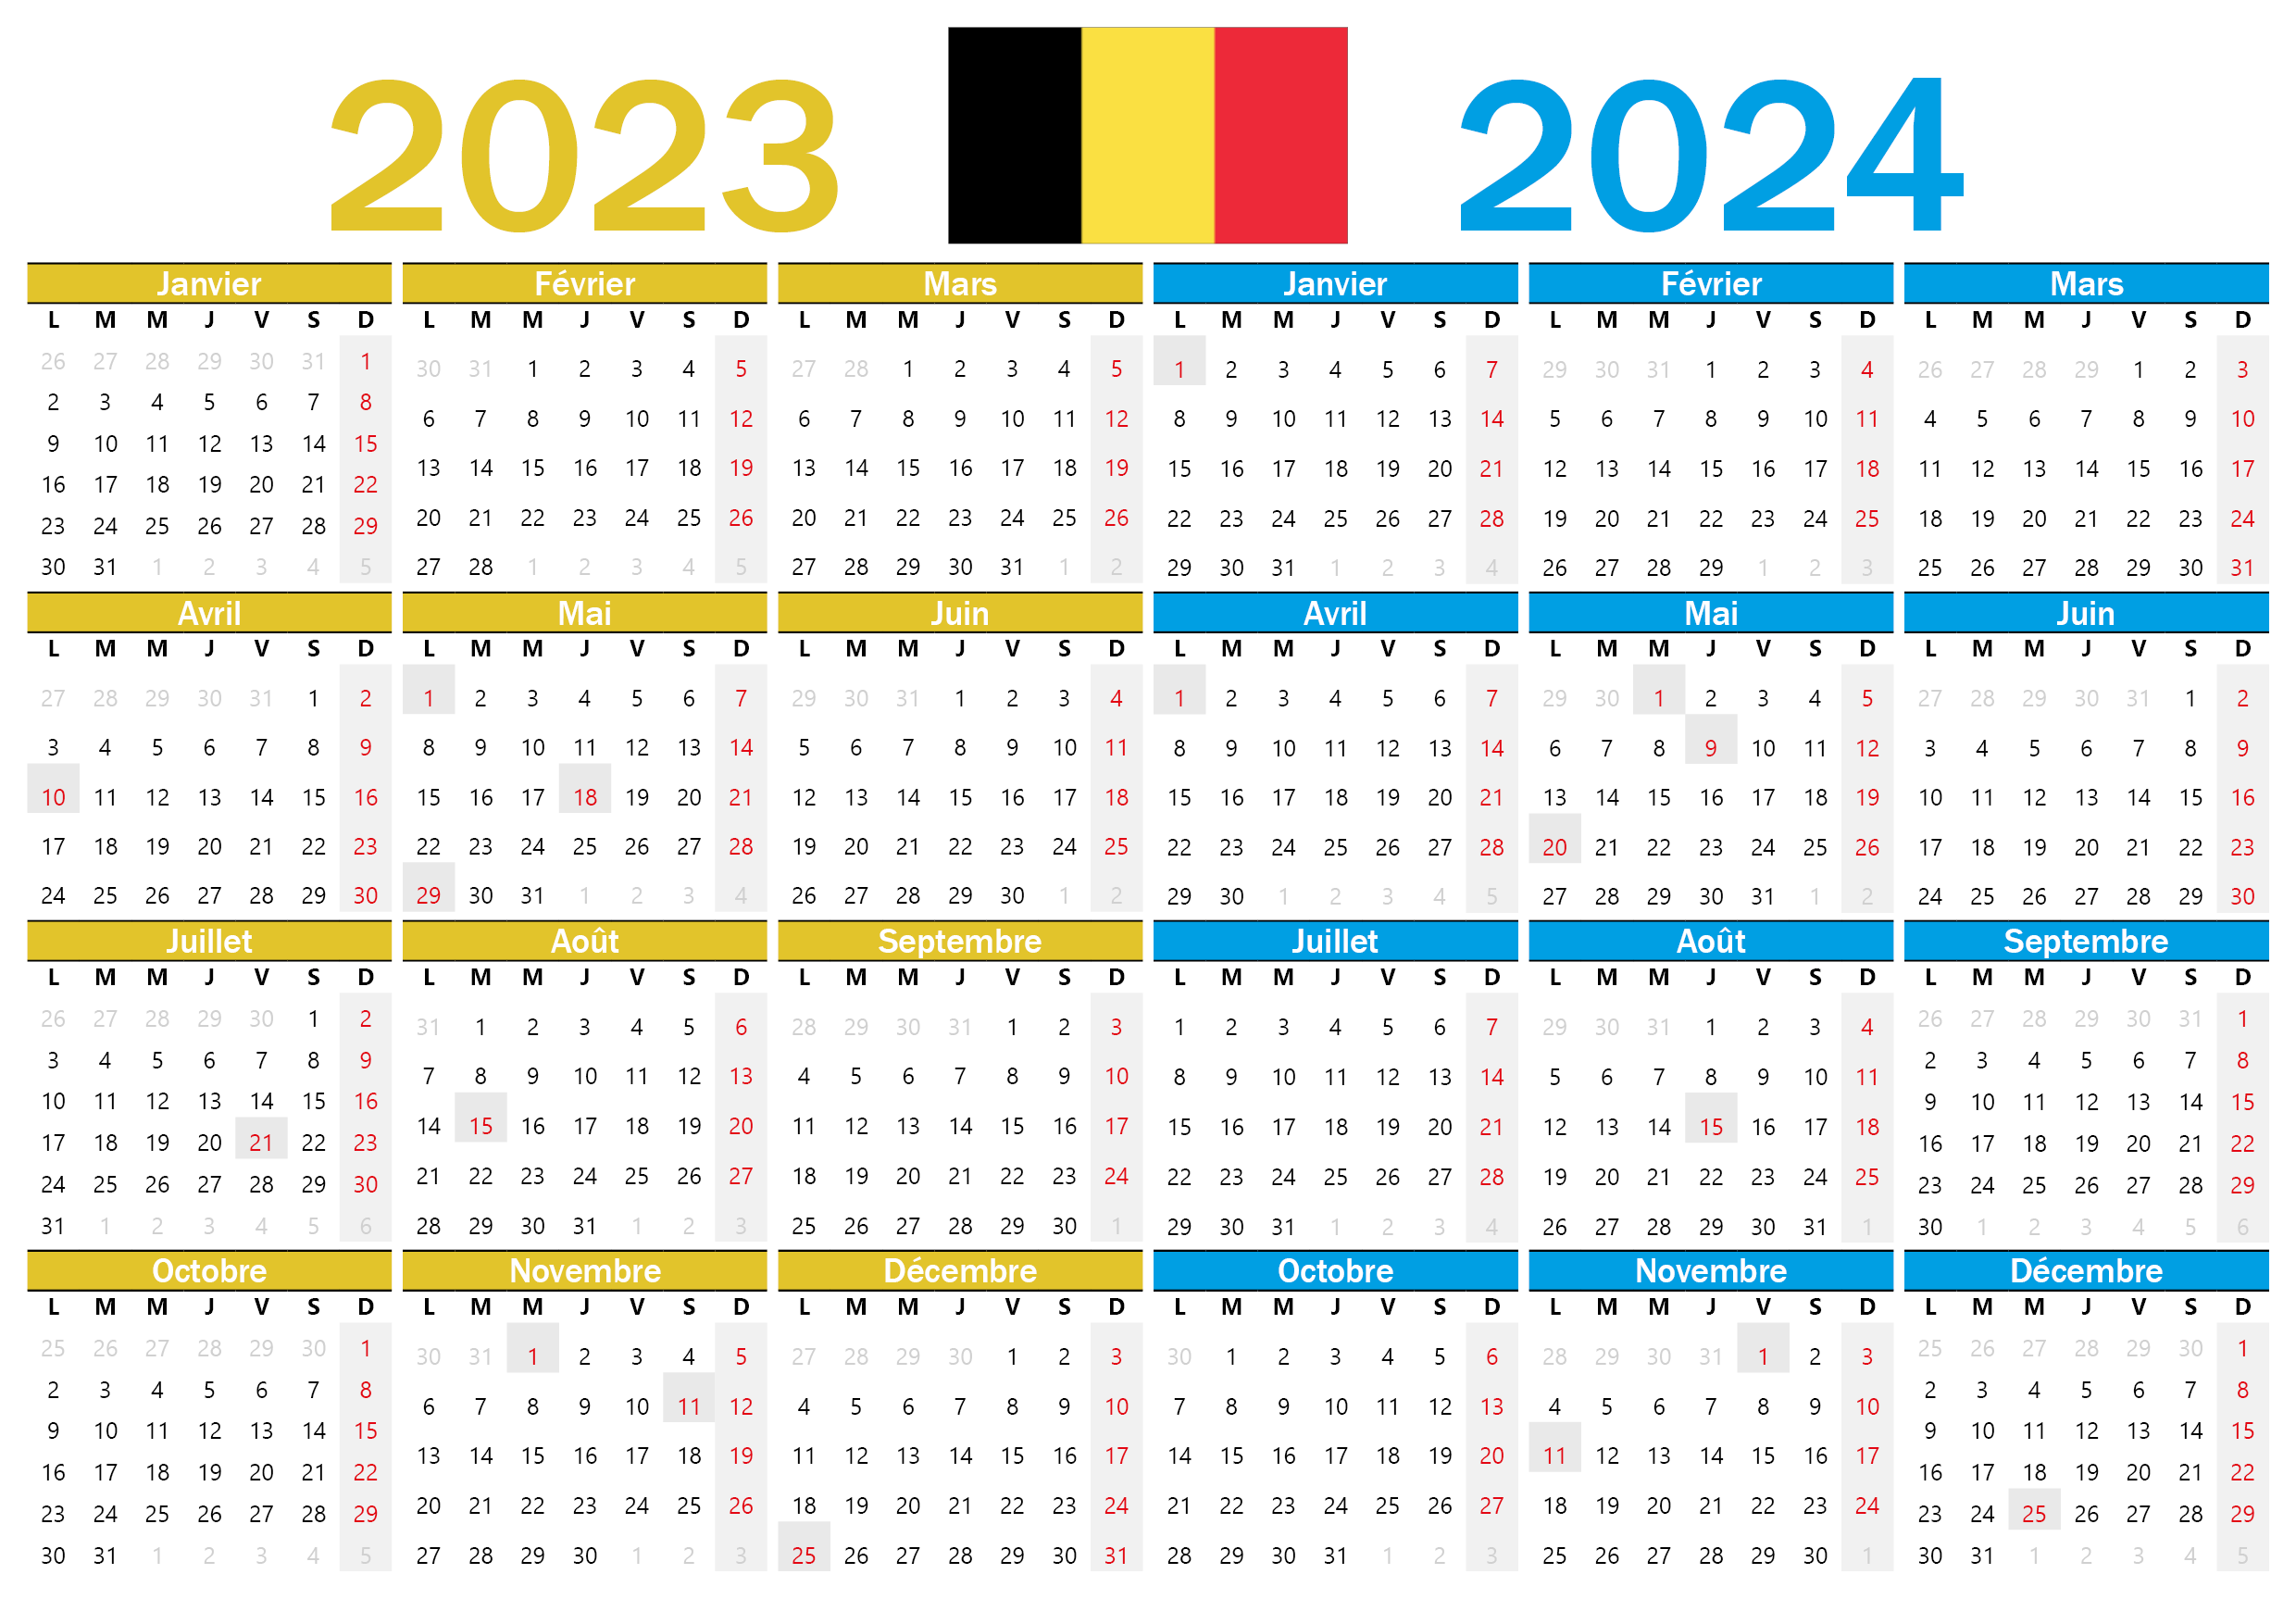 Calendrier 2023 à Imprimer Belgique Gratuitement